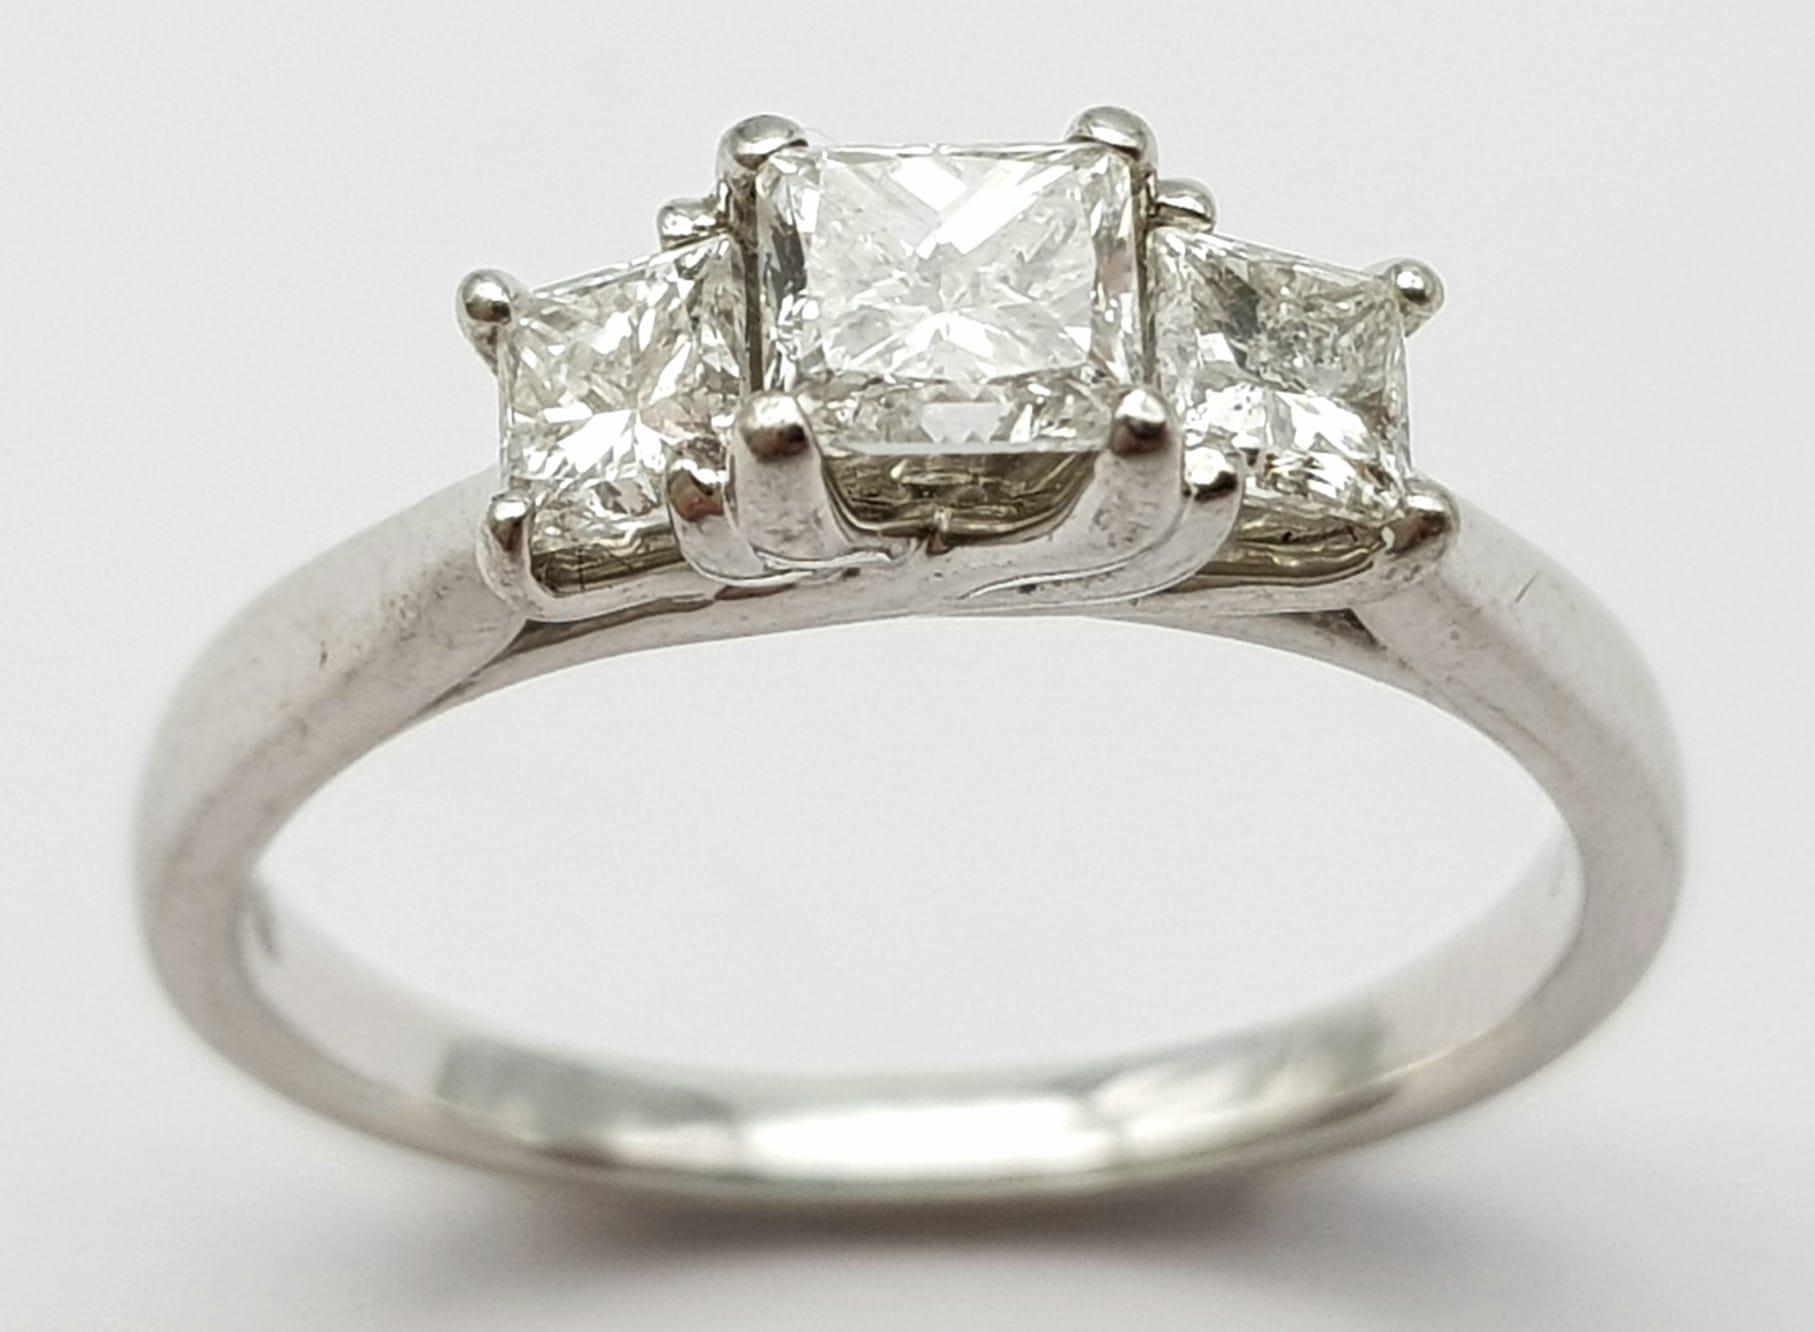 AN 18K WHITE GOLD TRILOGY PRINCESS CUT DIAMOND RING - 0.75CTW. 3.2G. SIZE K. - Image 2 of 6